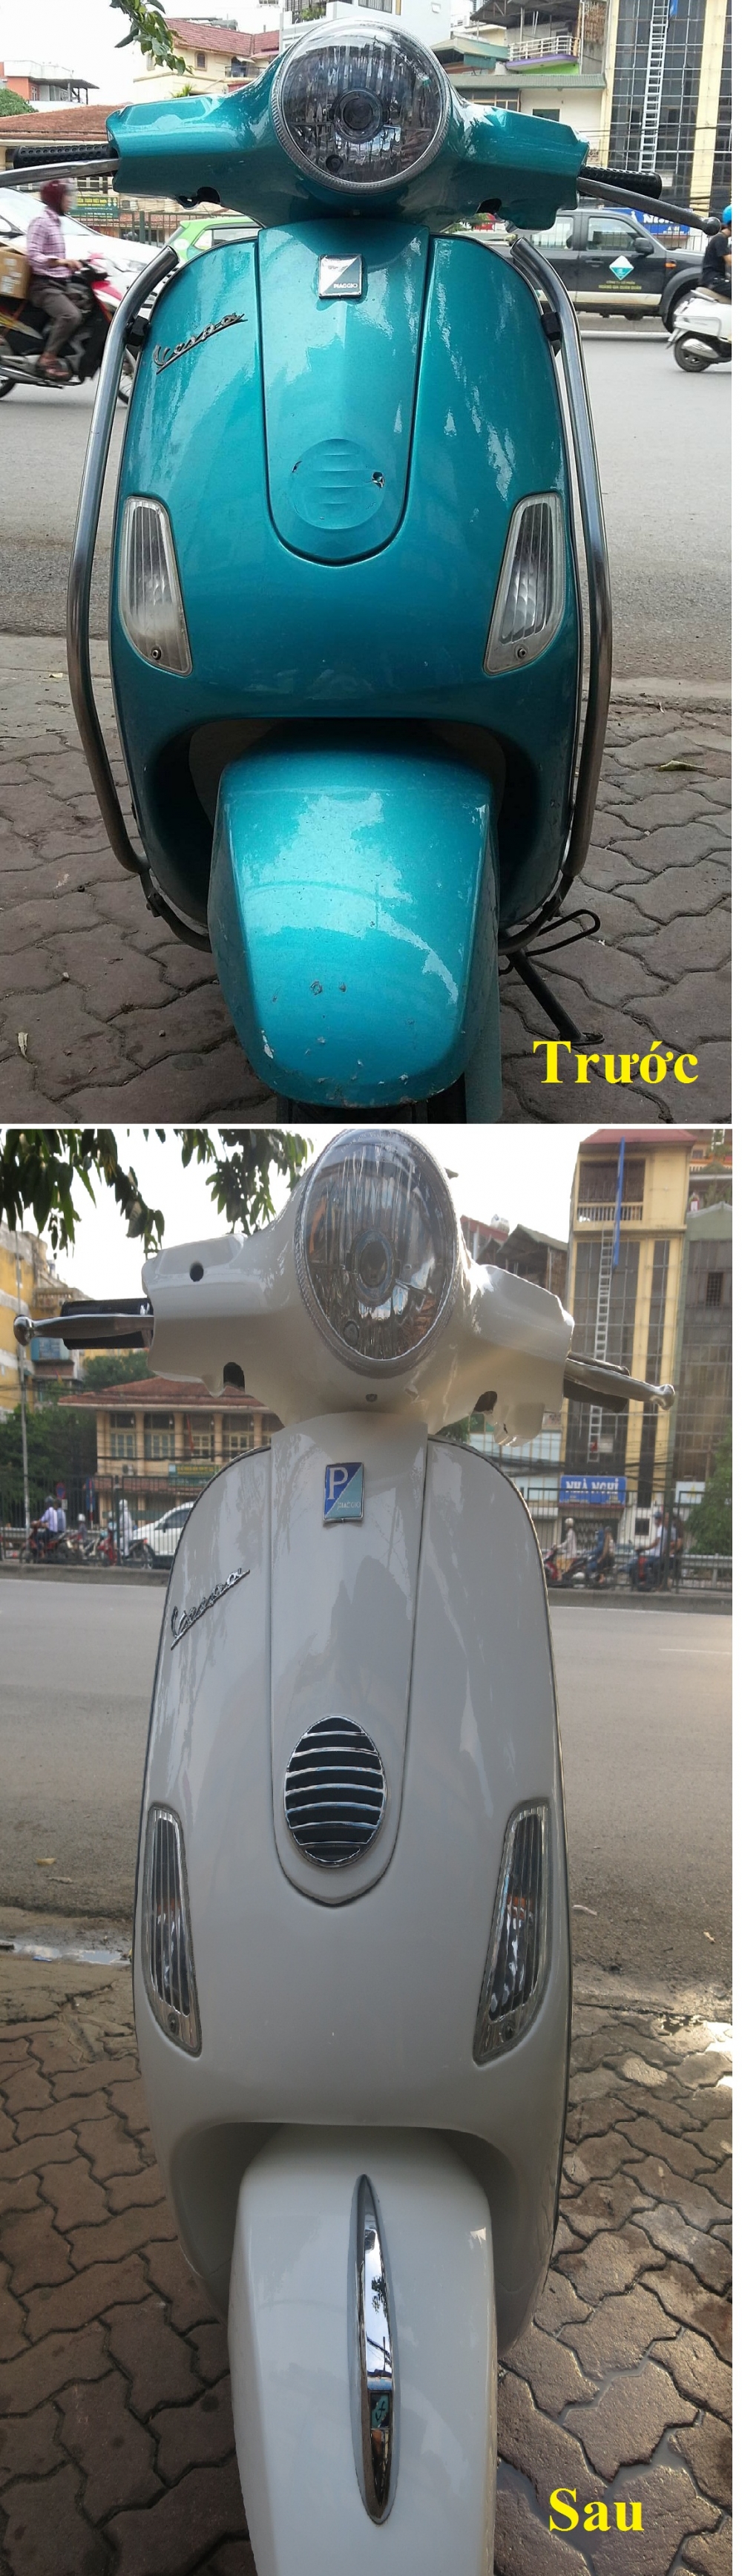 Dich vu son xe Vespa chuyen nghiep nhat Thanh Pho HA NOI - 4